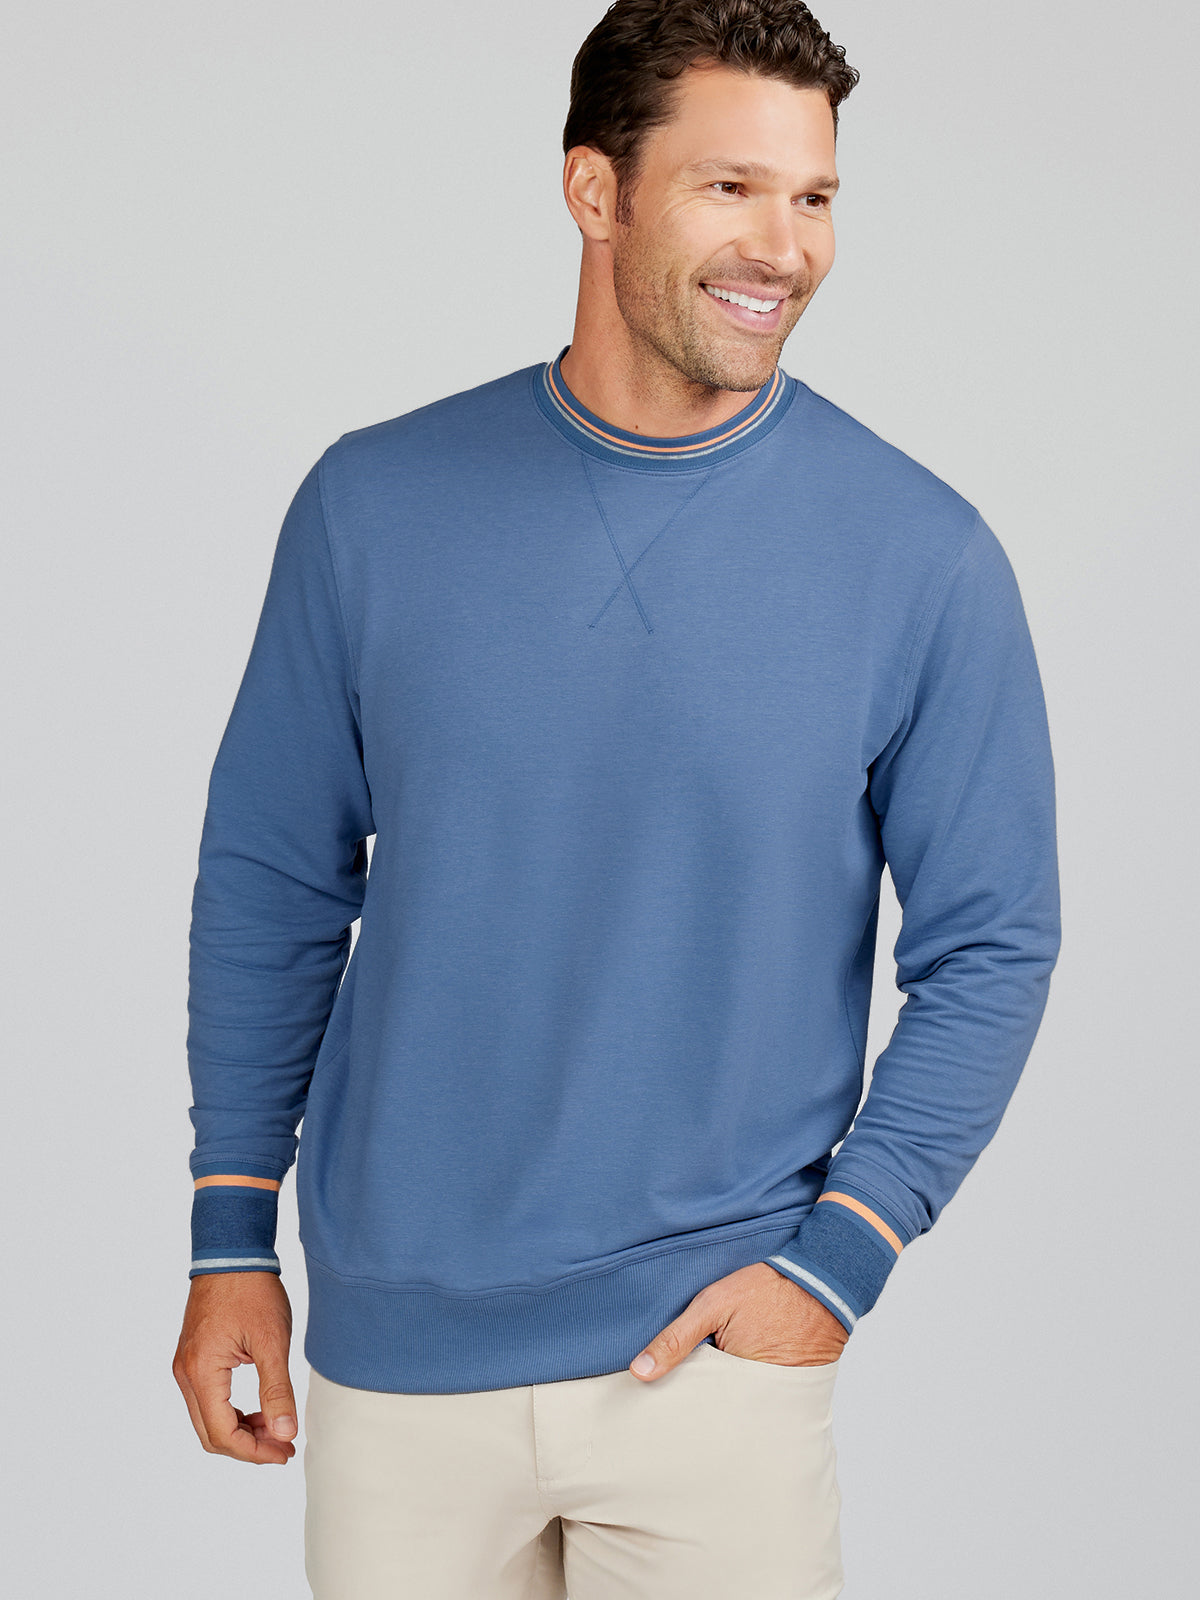 J.Crew: Short-sleeve Crewneck Sweatshirt In Original Cotton Terry